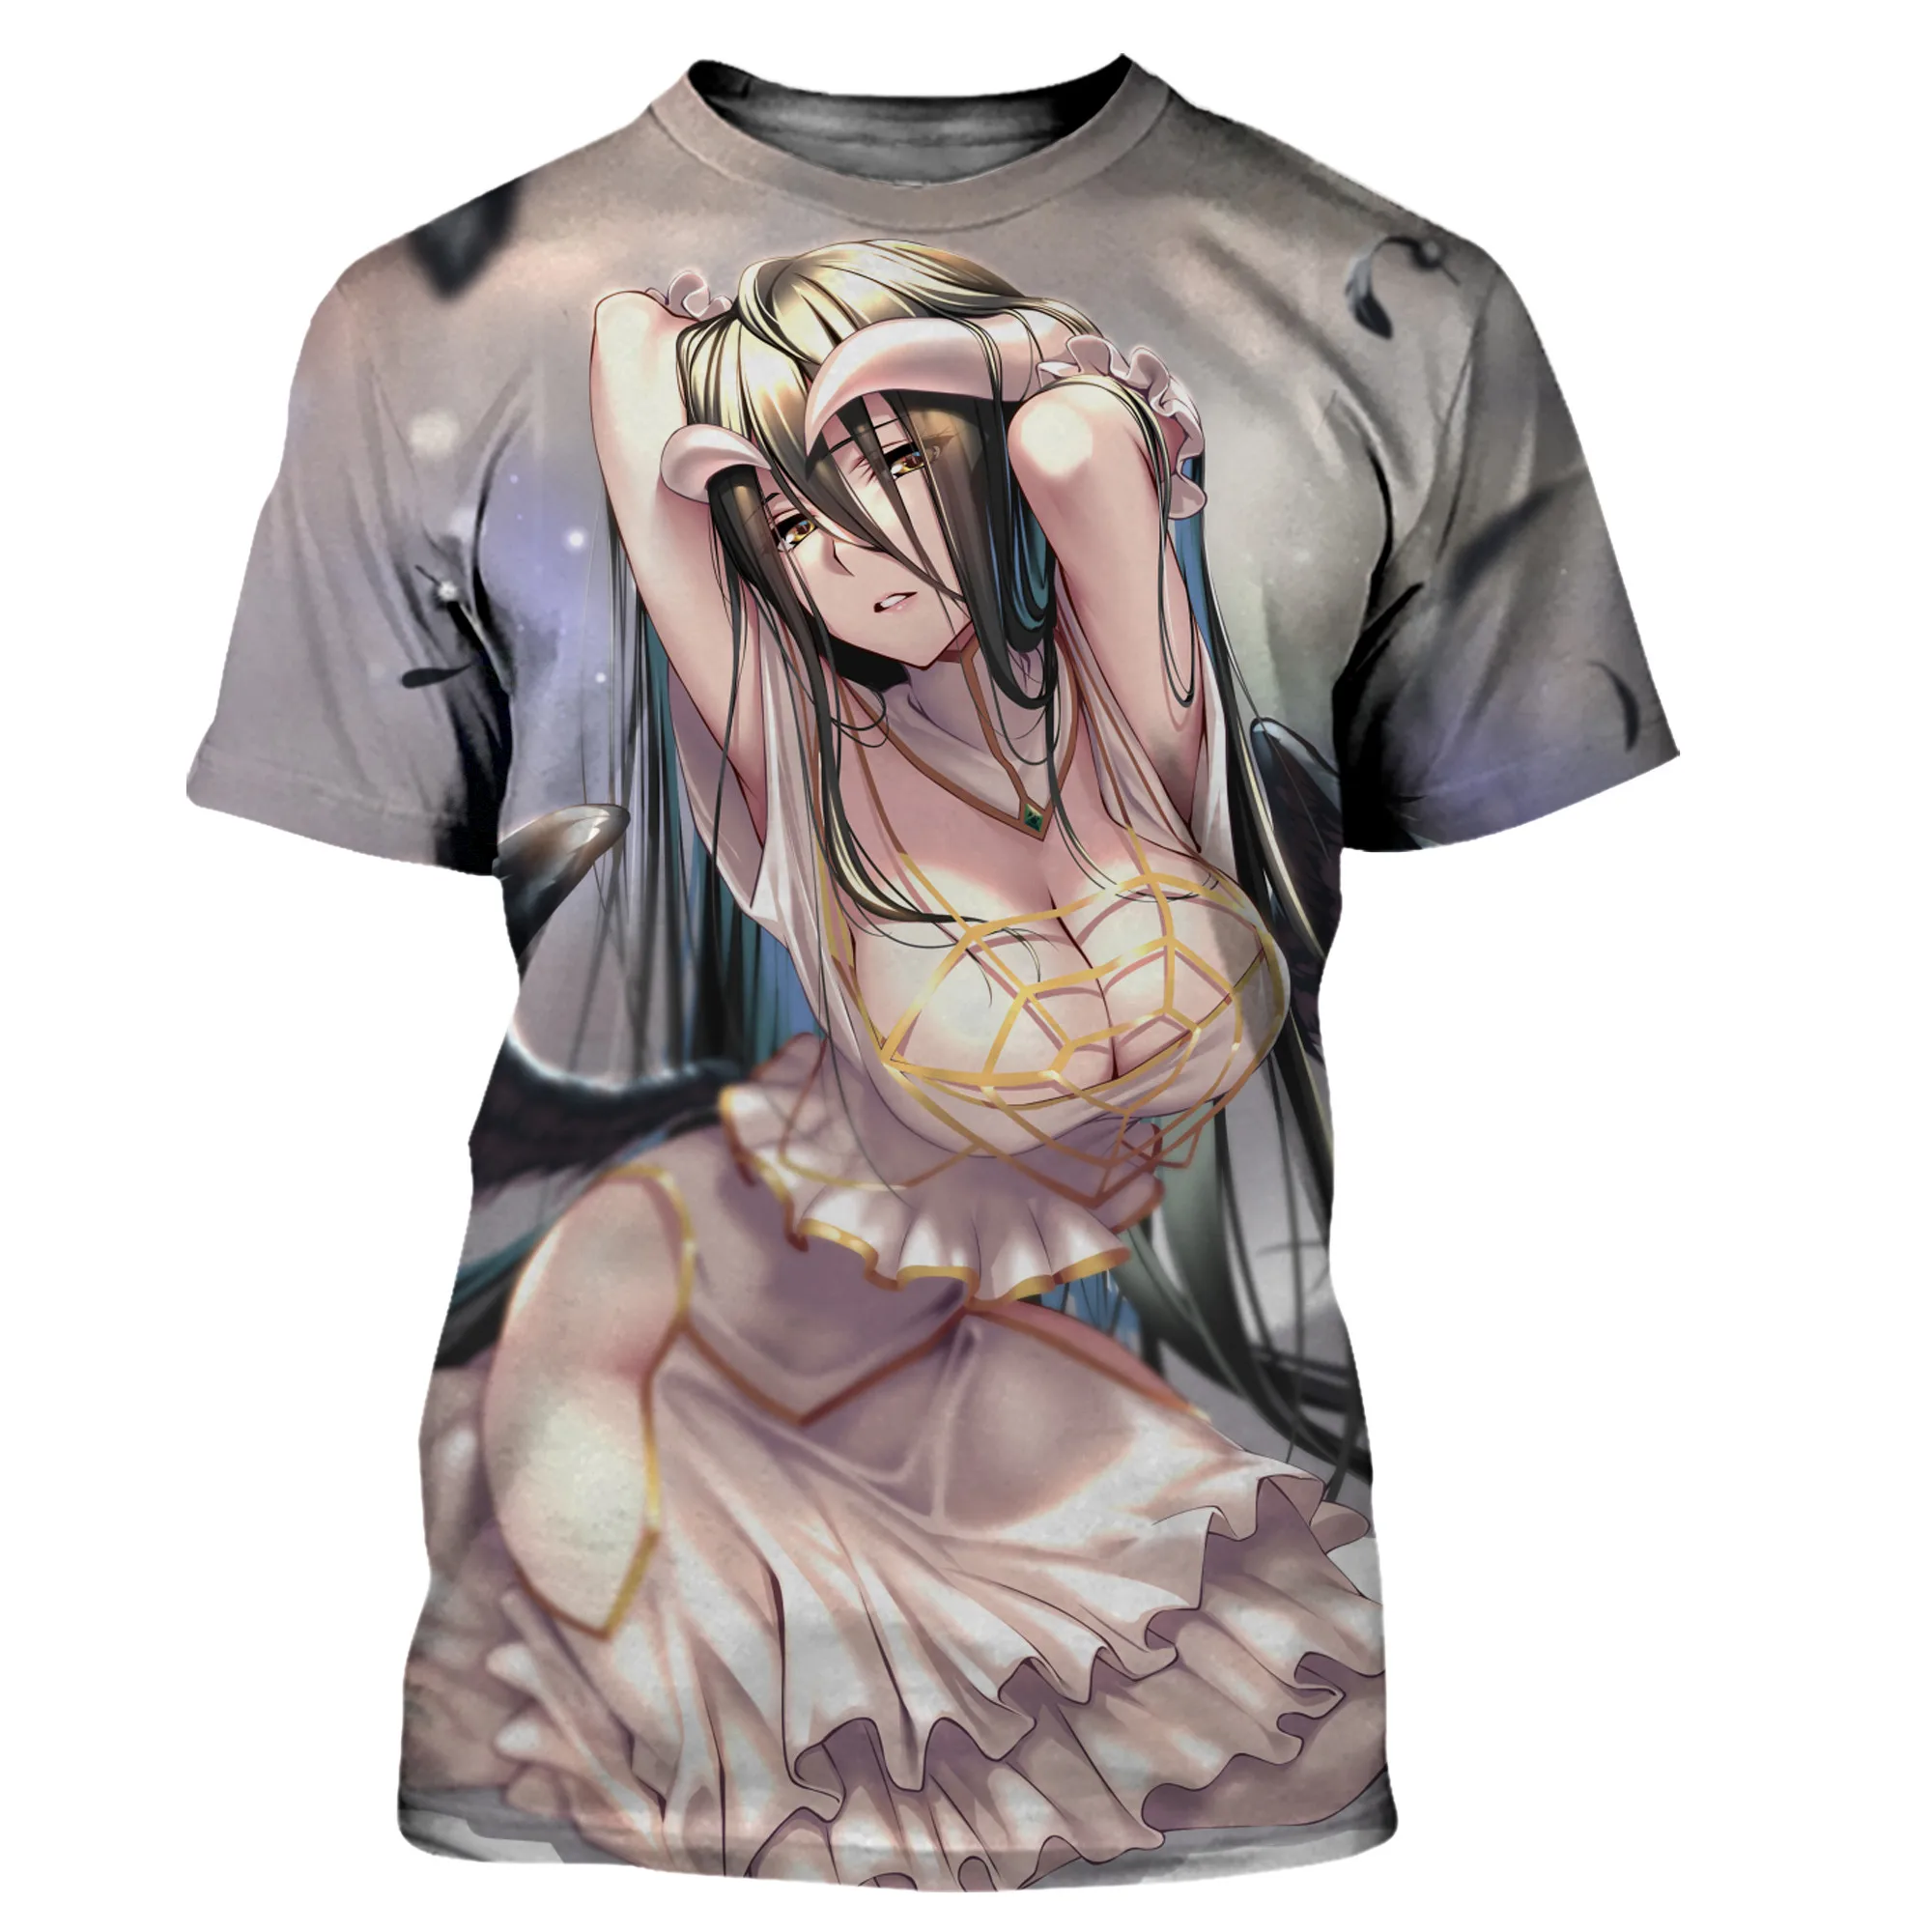 

Новые Топы Overlord с аниме альбедо и сексуальной девушкой с 3D принтом, мужская и женская футболка унисекс, летние футболки большого размера, Повседневная модная одежда, футболки